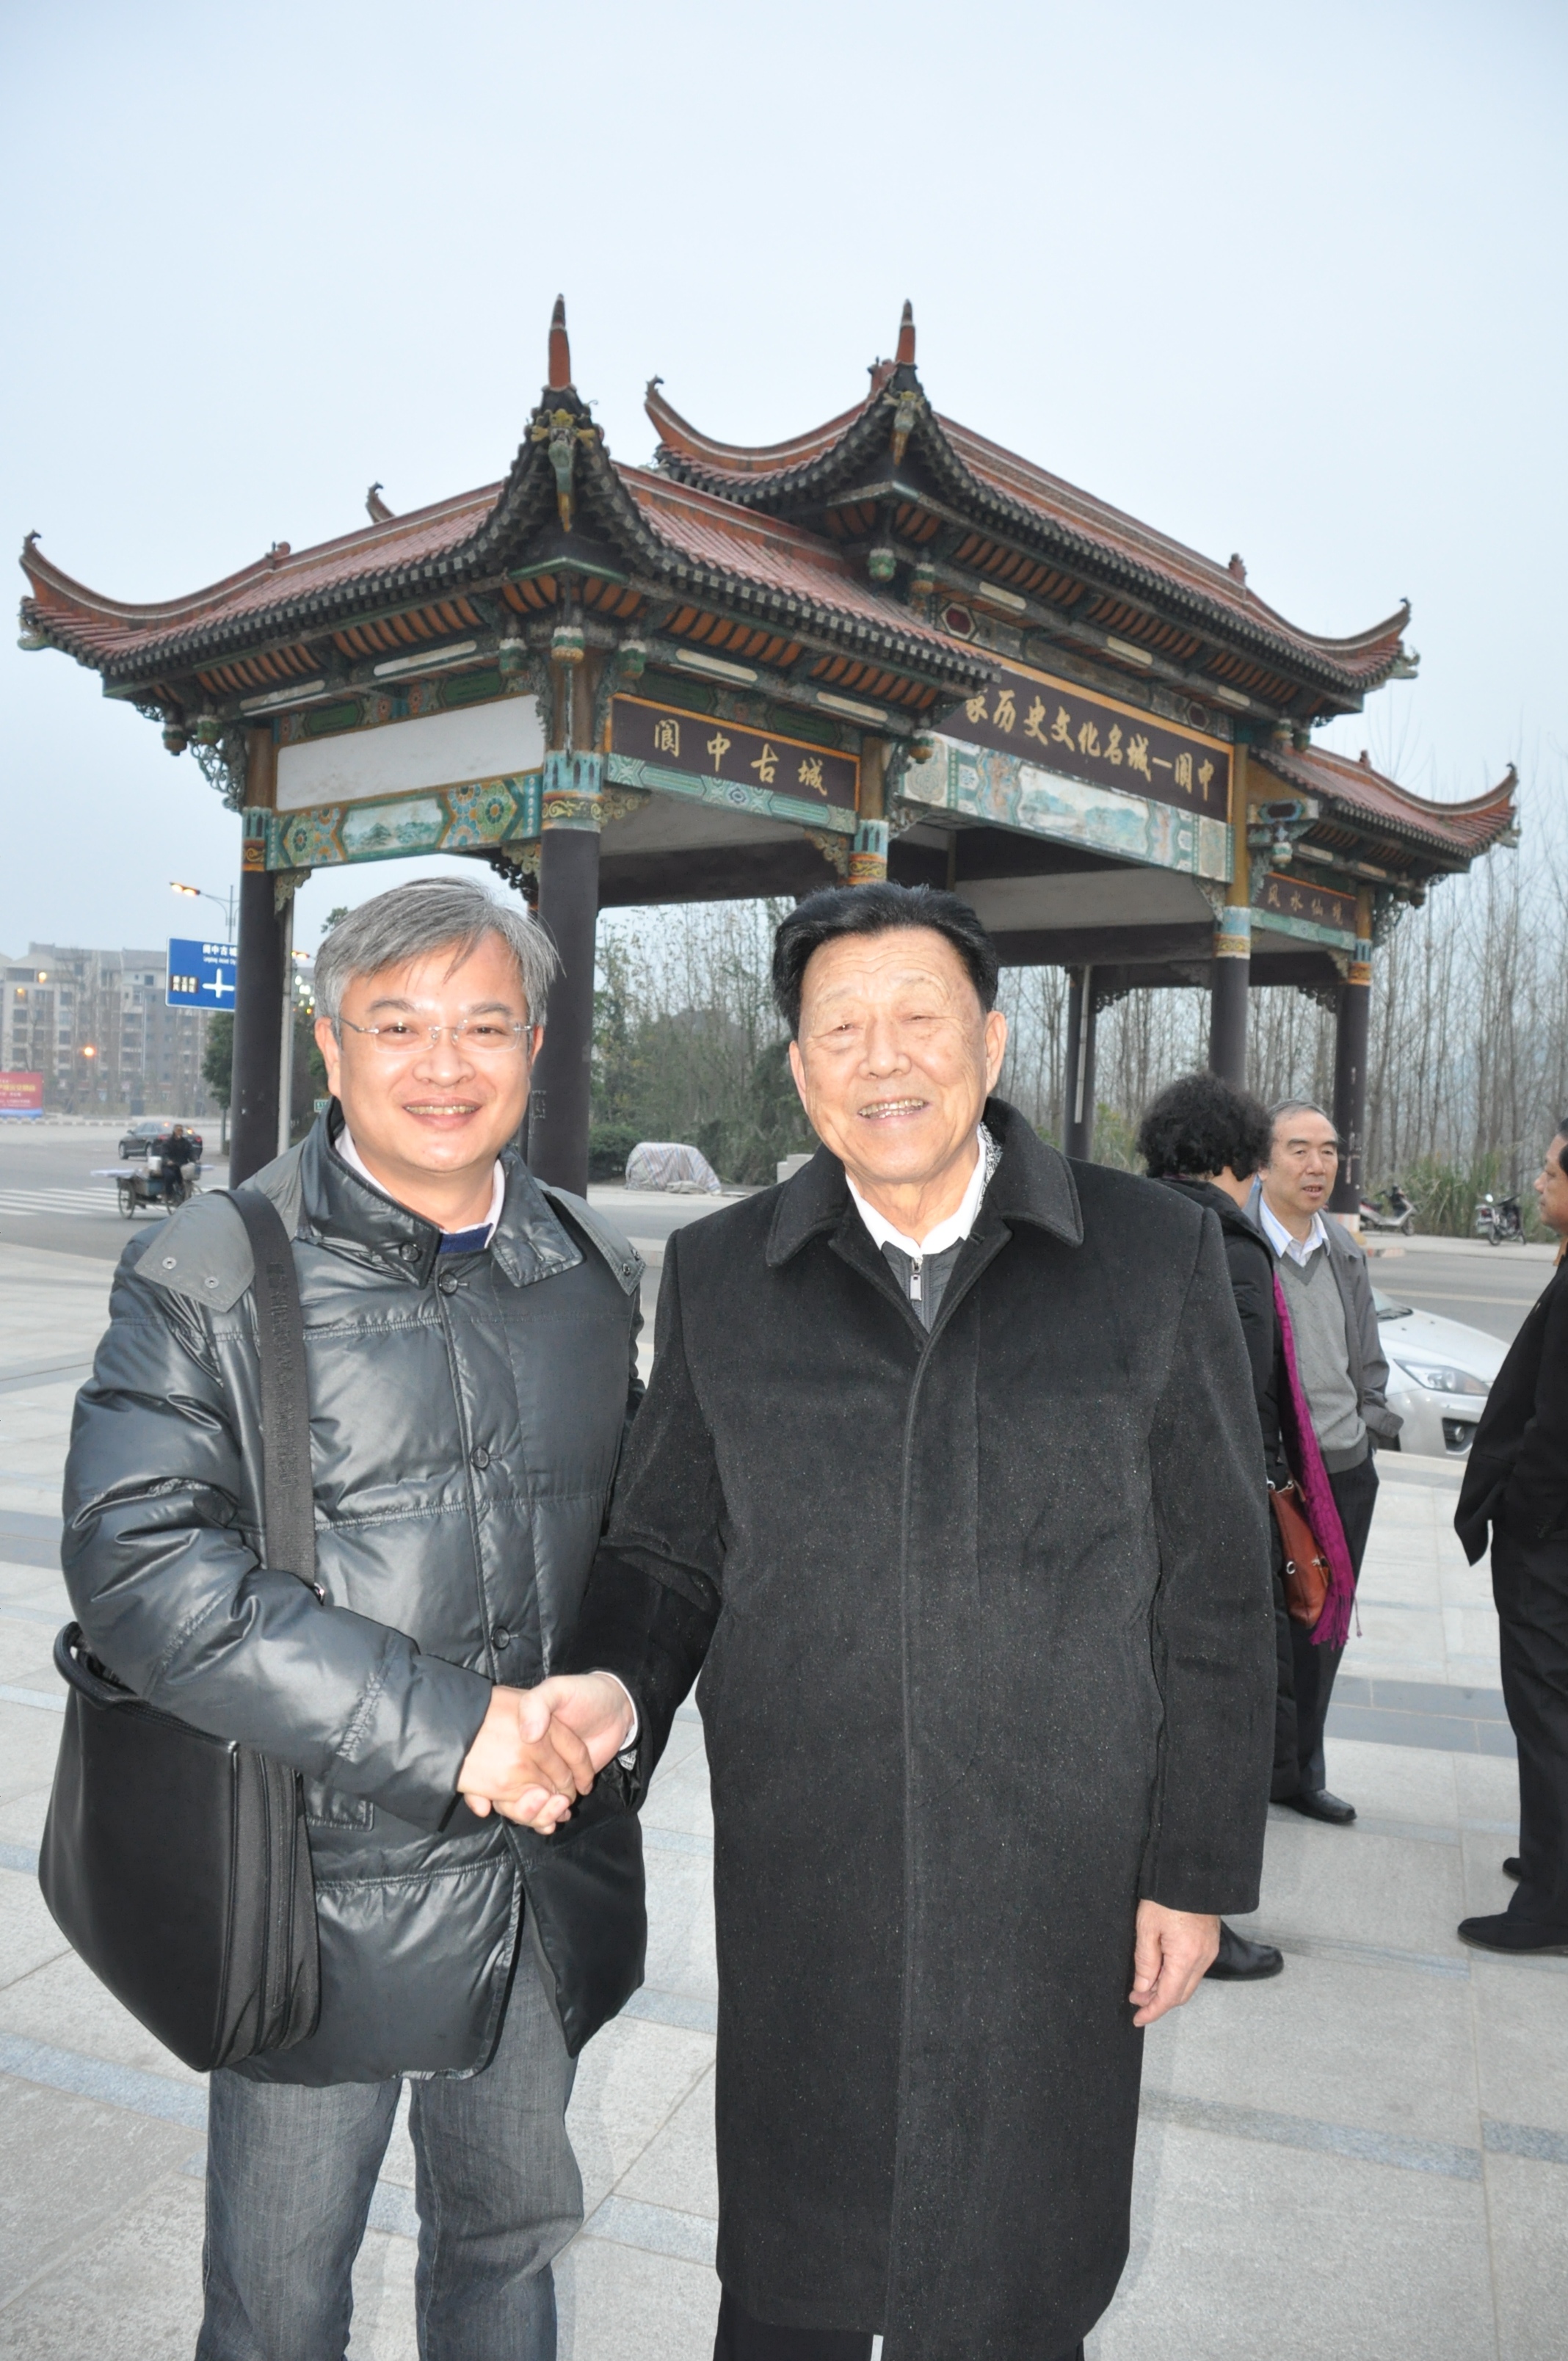 与古今明先生留影-周恩来总理秘书中国第一任礼宾官员